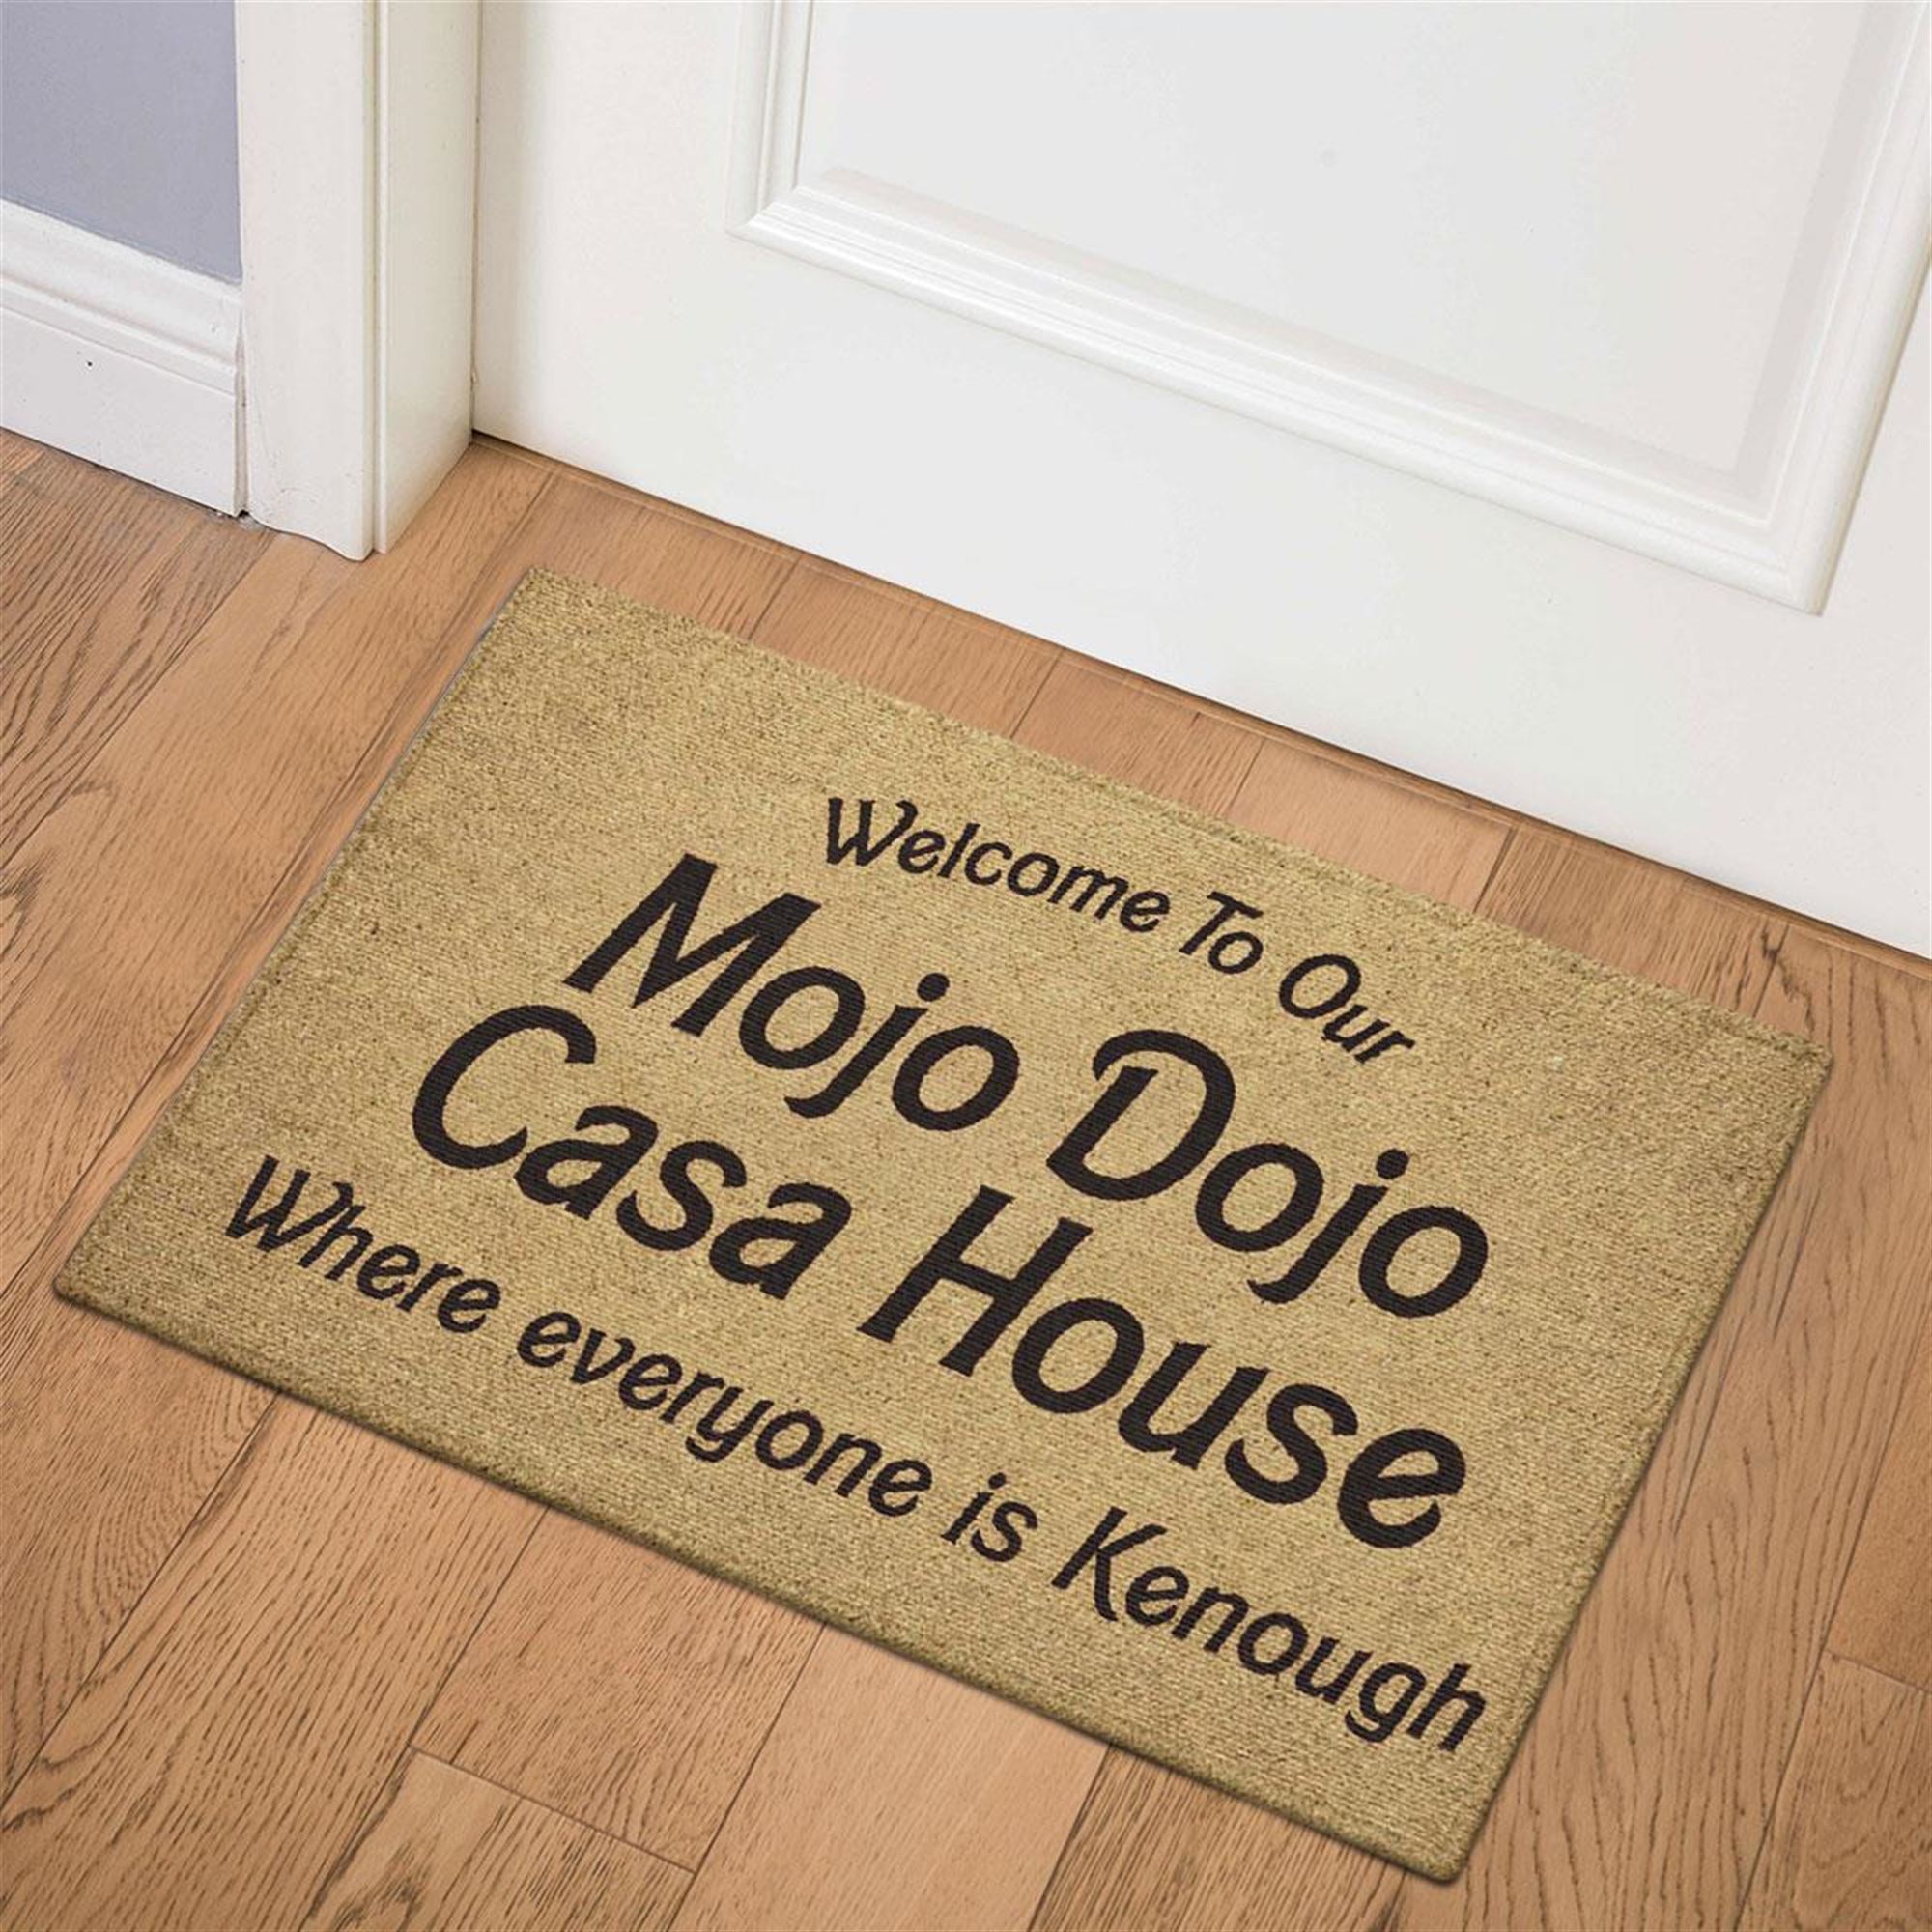 Mojo Dojo Casa House Doormat, Welcome To Mojo Dojo Casa House Mat, Mojo Dojo  Doo